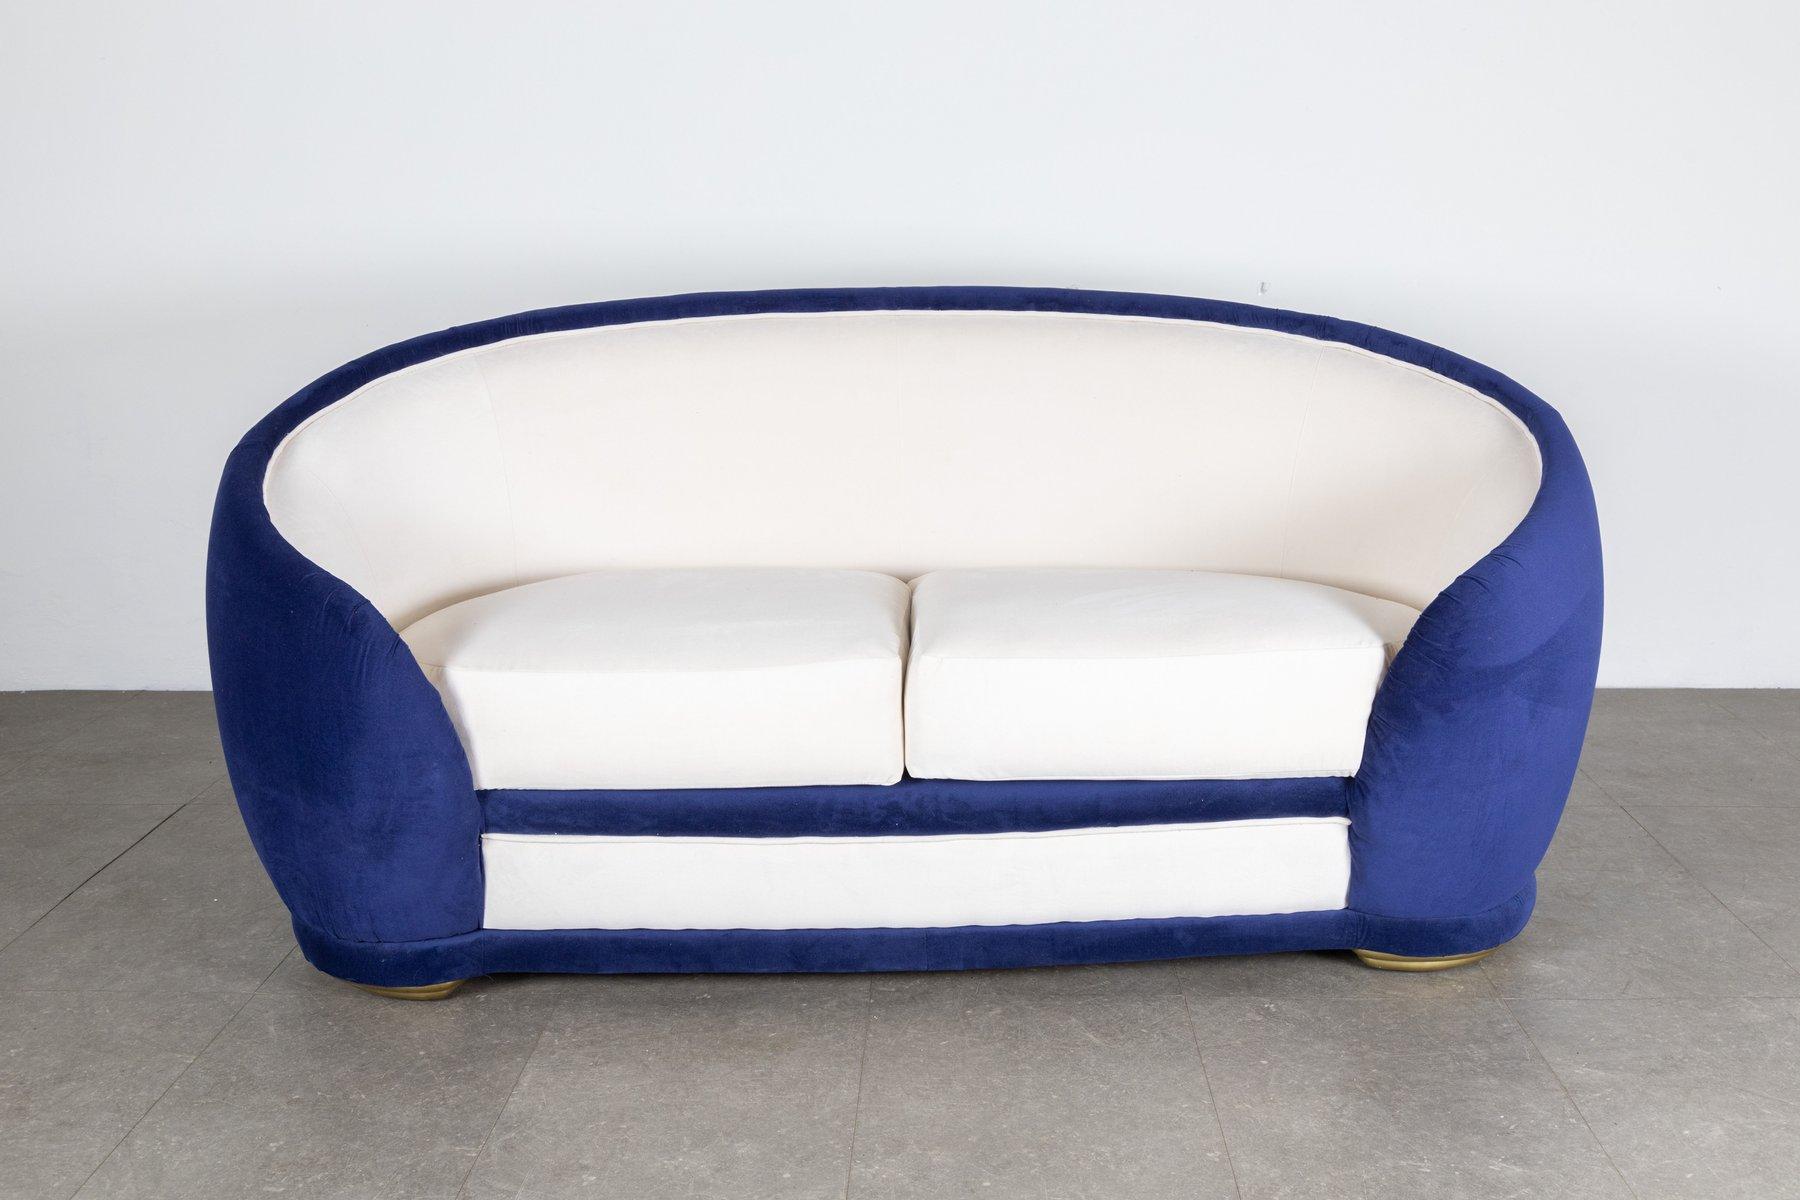 Die italienischen 1950er Jahre waren ikonisch und innovativ, vor allem wenn es um Sitzgelegenheiten ging. Dieses kleine Sofa ist ein Beispiel für italienisches kreatives Genie.
Unter den großen Meistern, die diese Modelle entworfen haben, sind